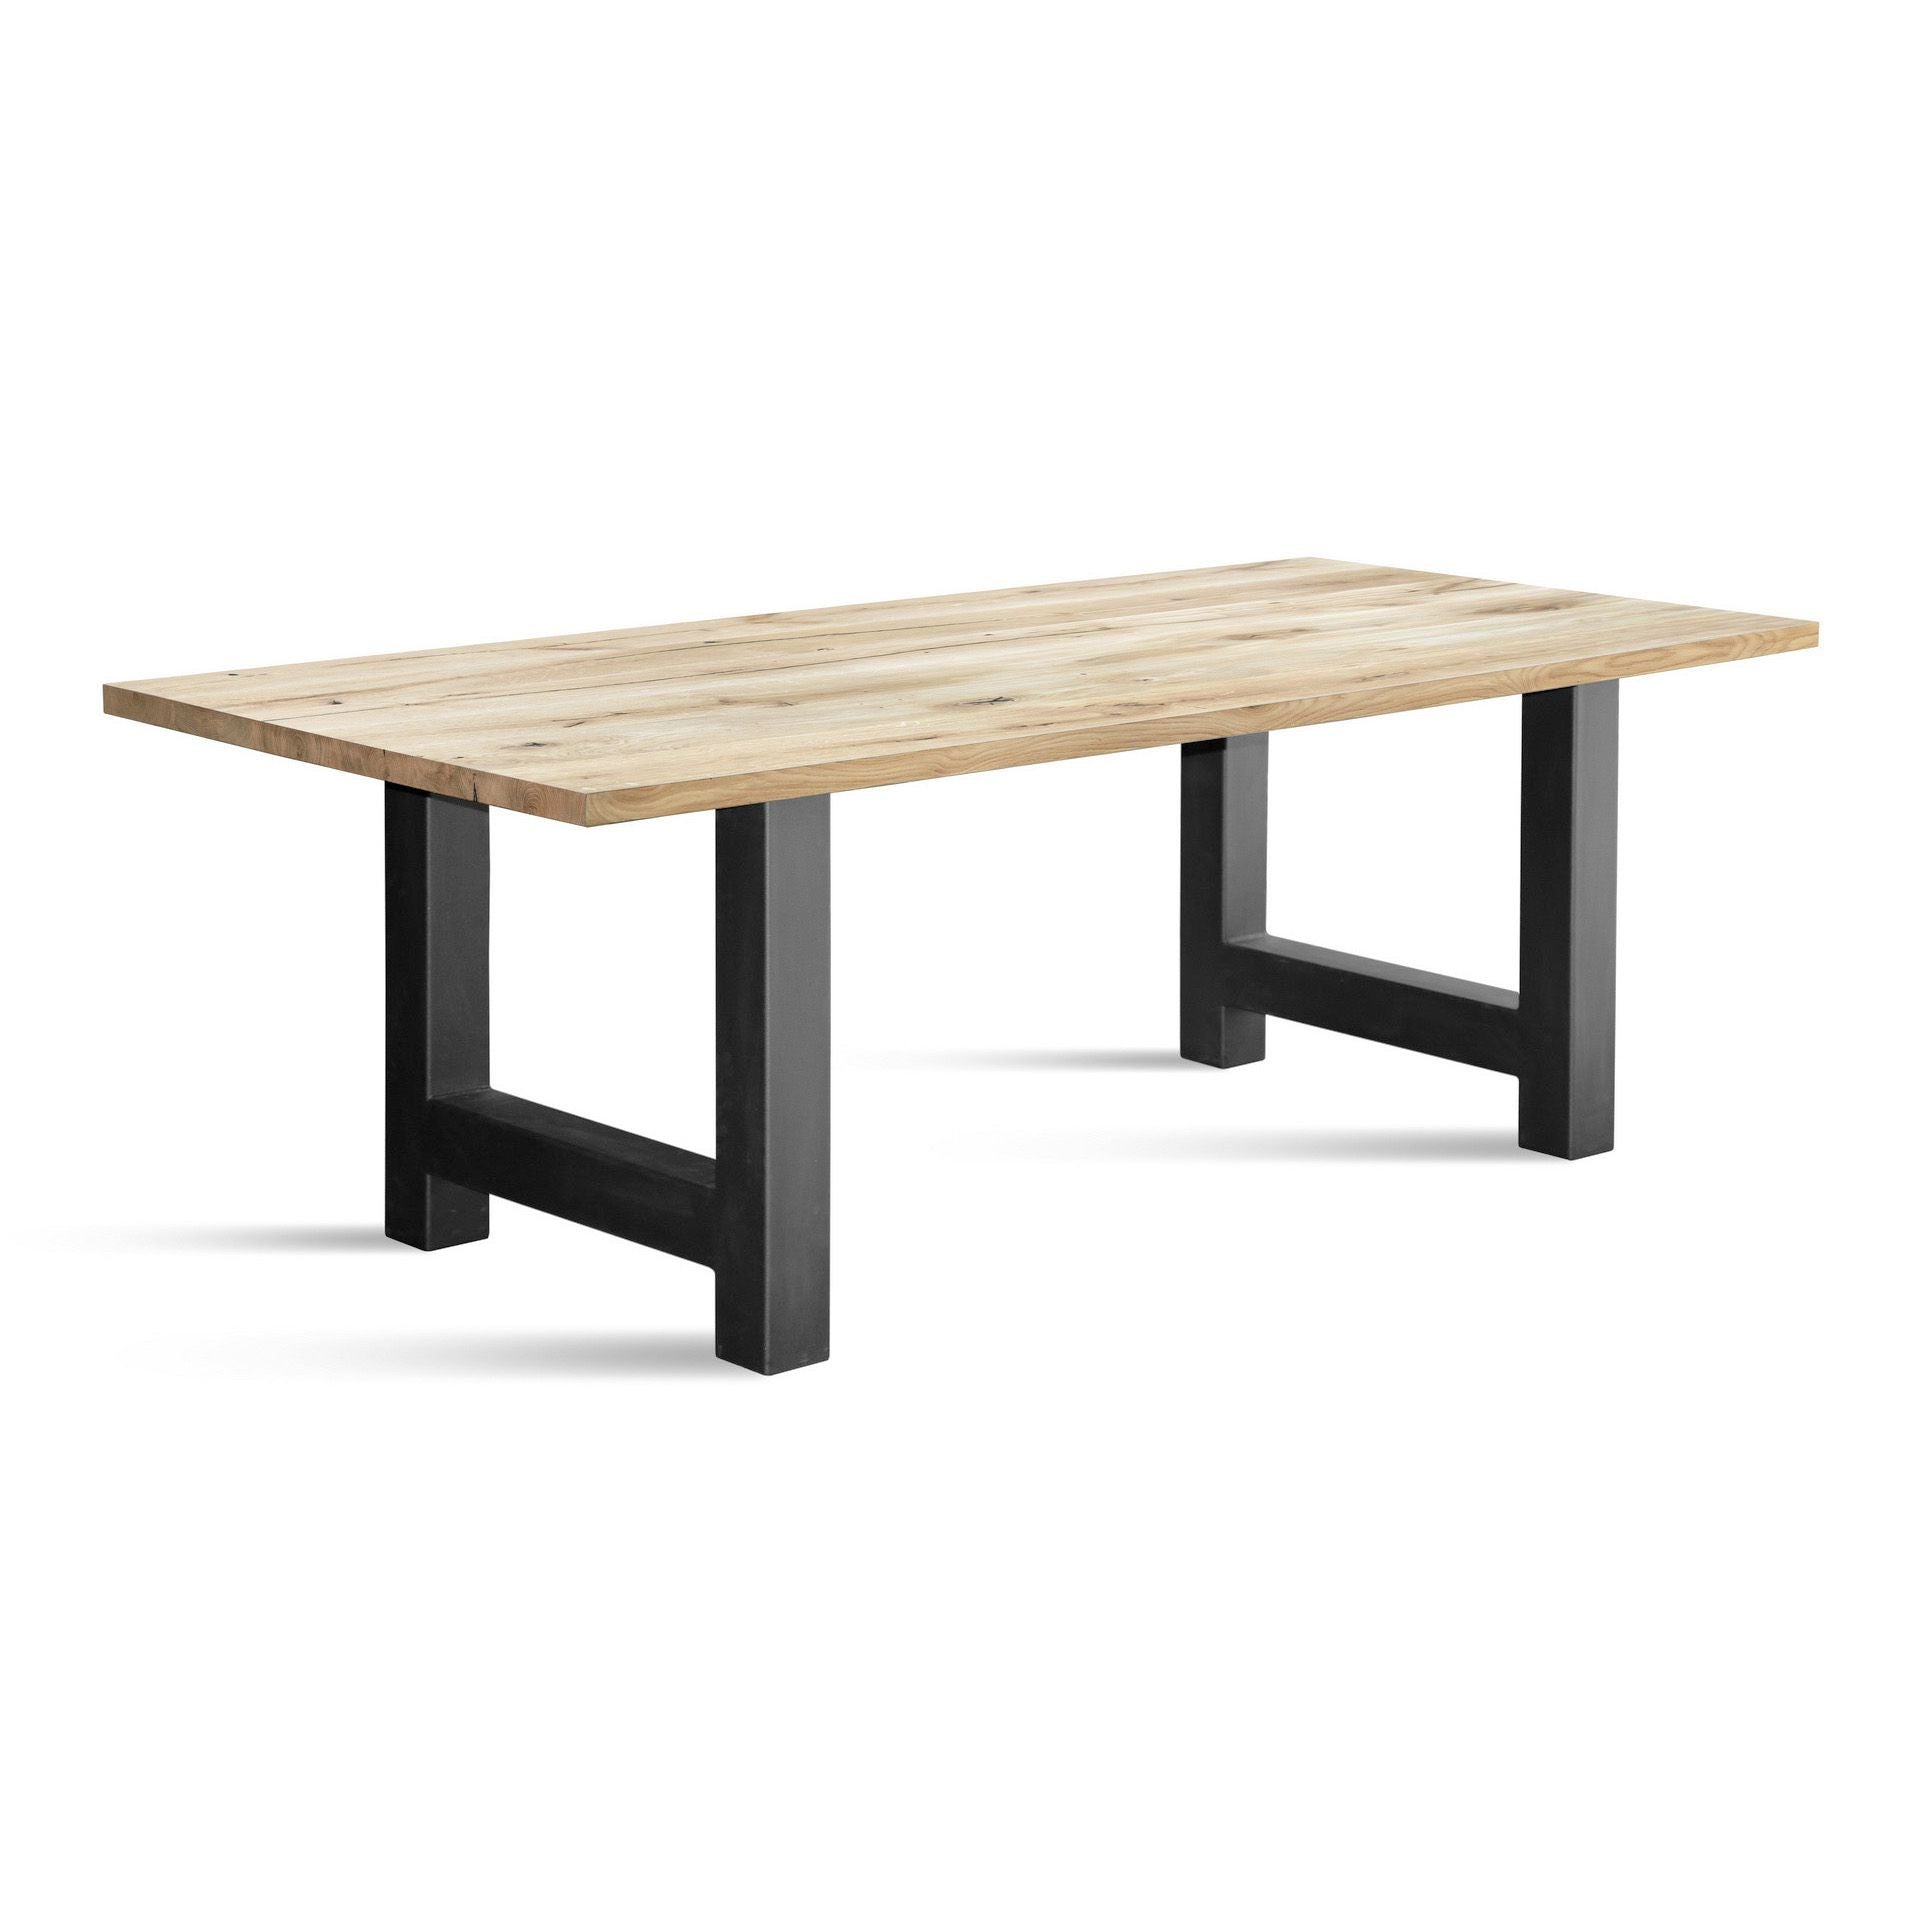 tablero de roble macizo para mesas, mesa de madera de roble macizo